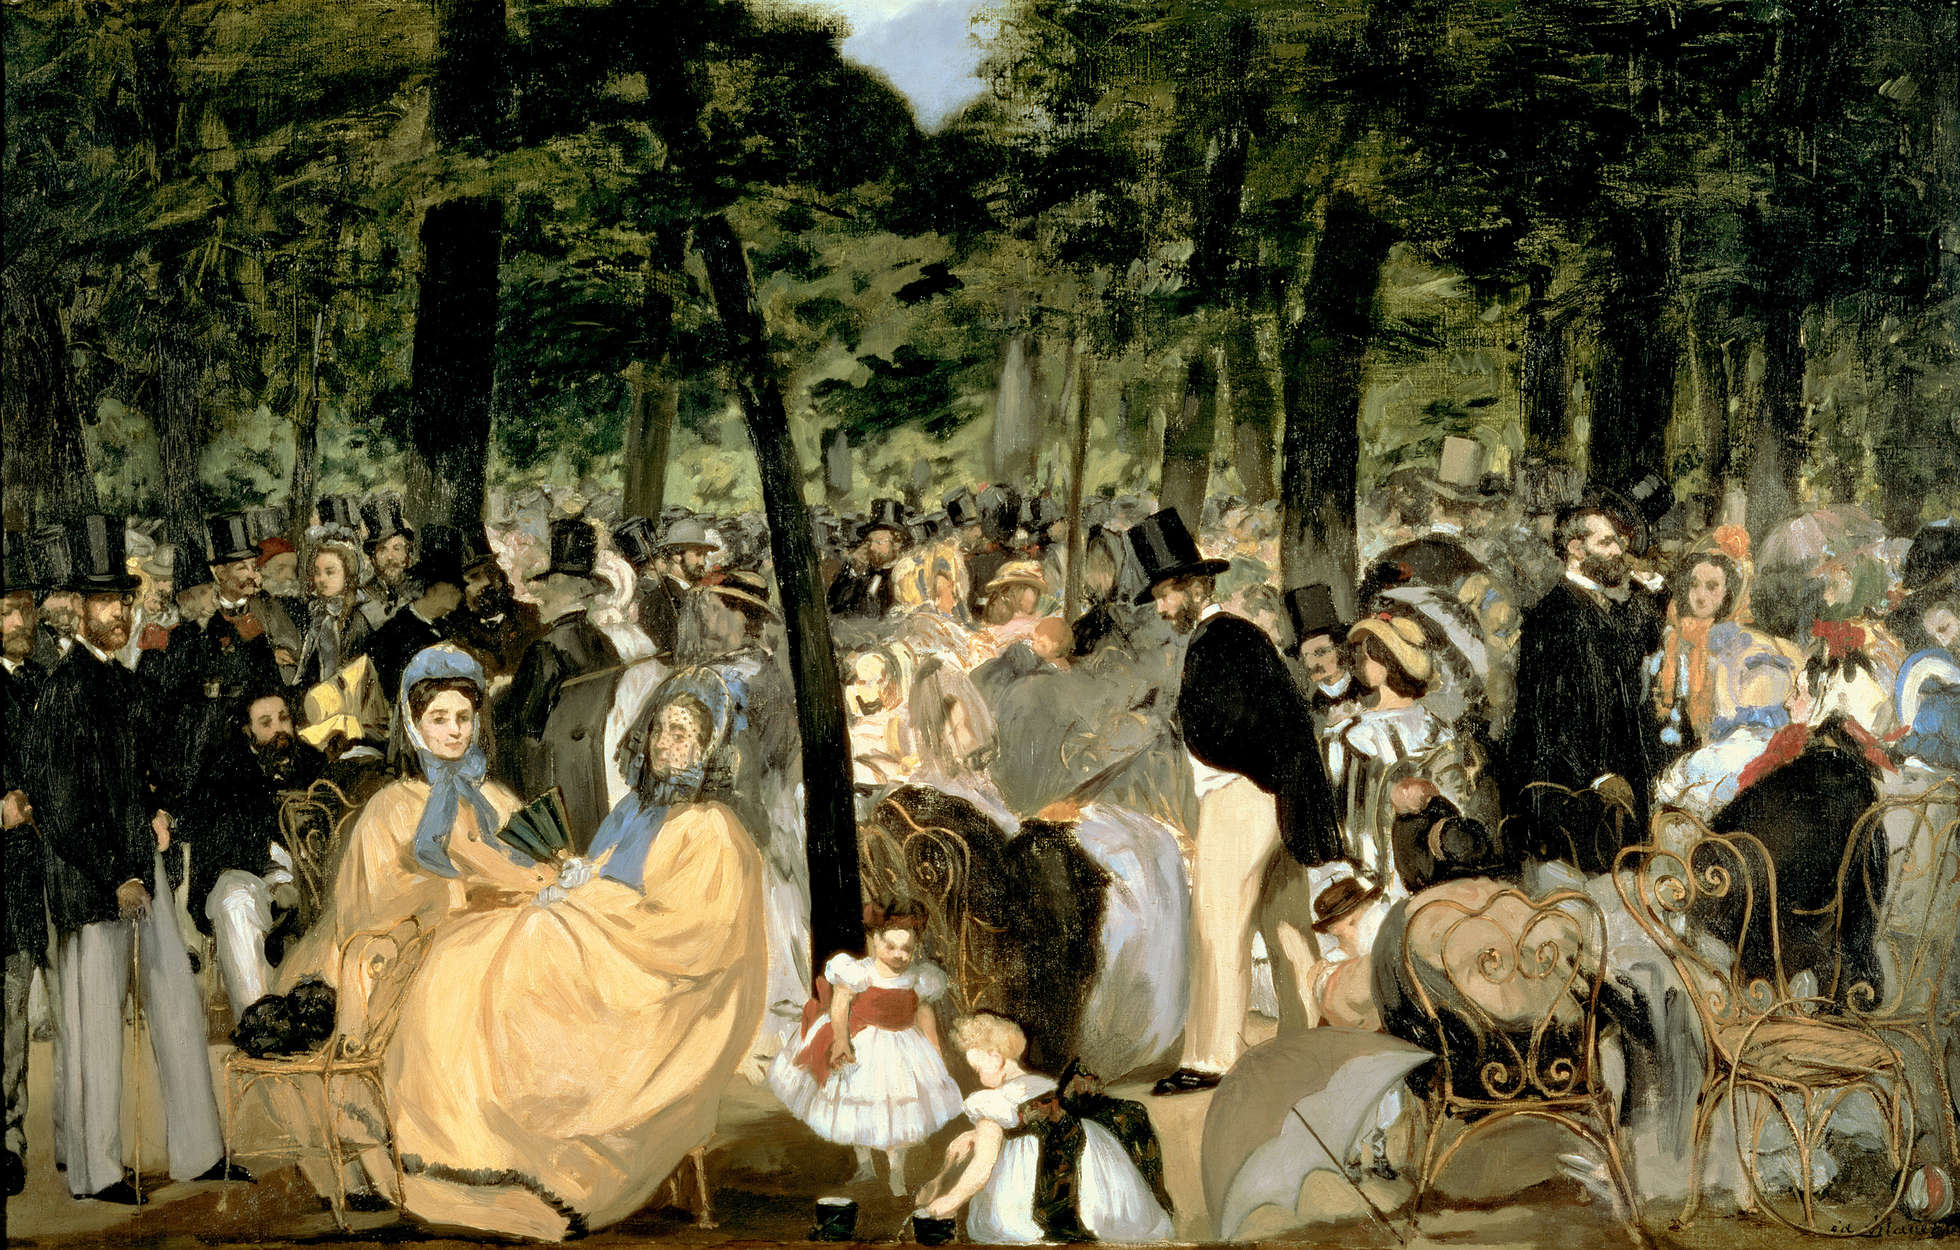             Musica nei giardini delle Tuileries", murale di Edouard Manet
        